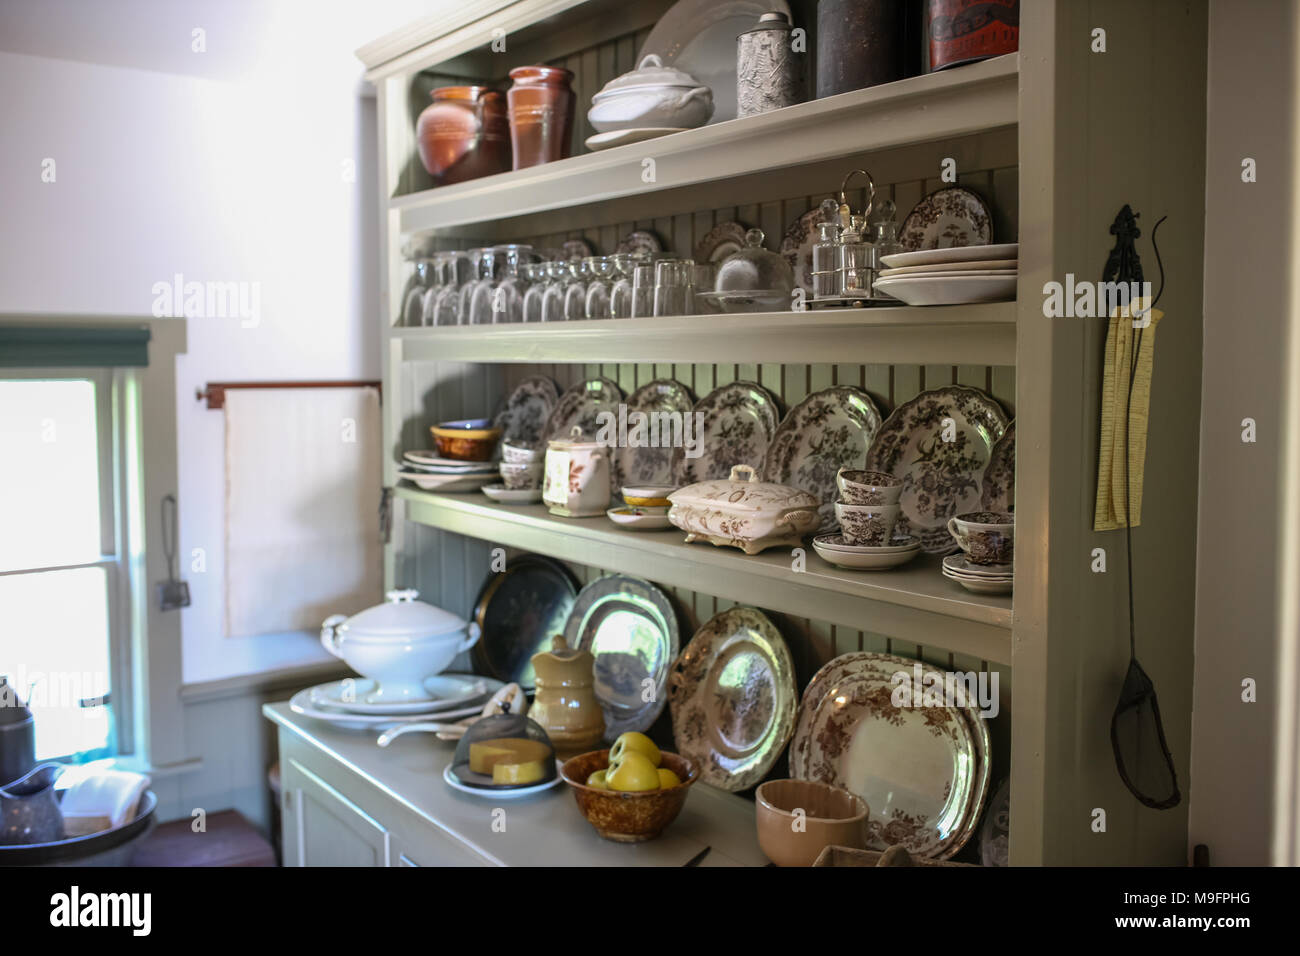 Les chambres de l'intérieur de la maison aux pignons verts, la Prince Edward Island farm house qui est le paramètre pour le roman de Lucy Maud Montgomery, Anne of Green Gables. Banque D'Images